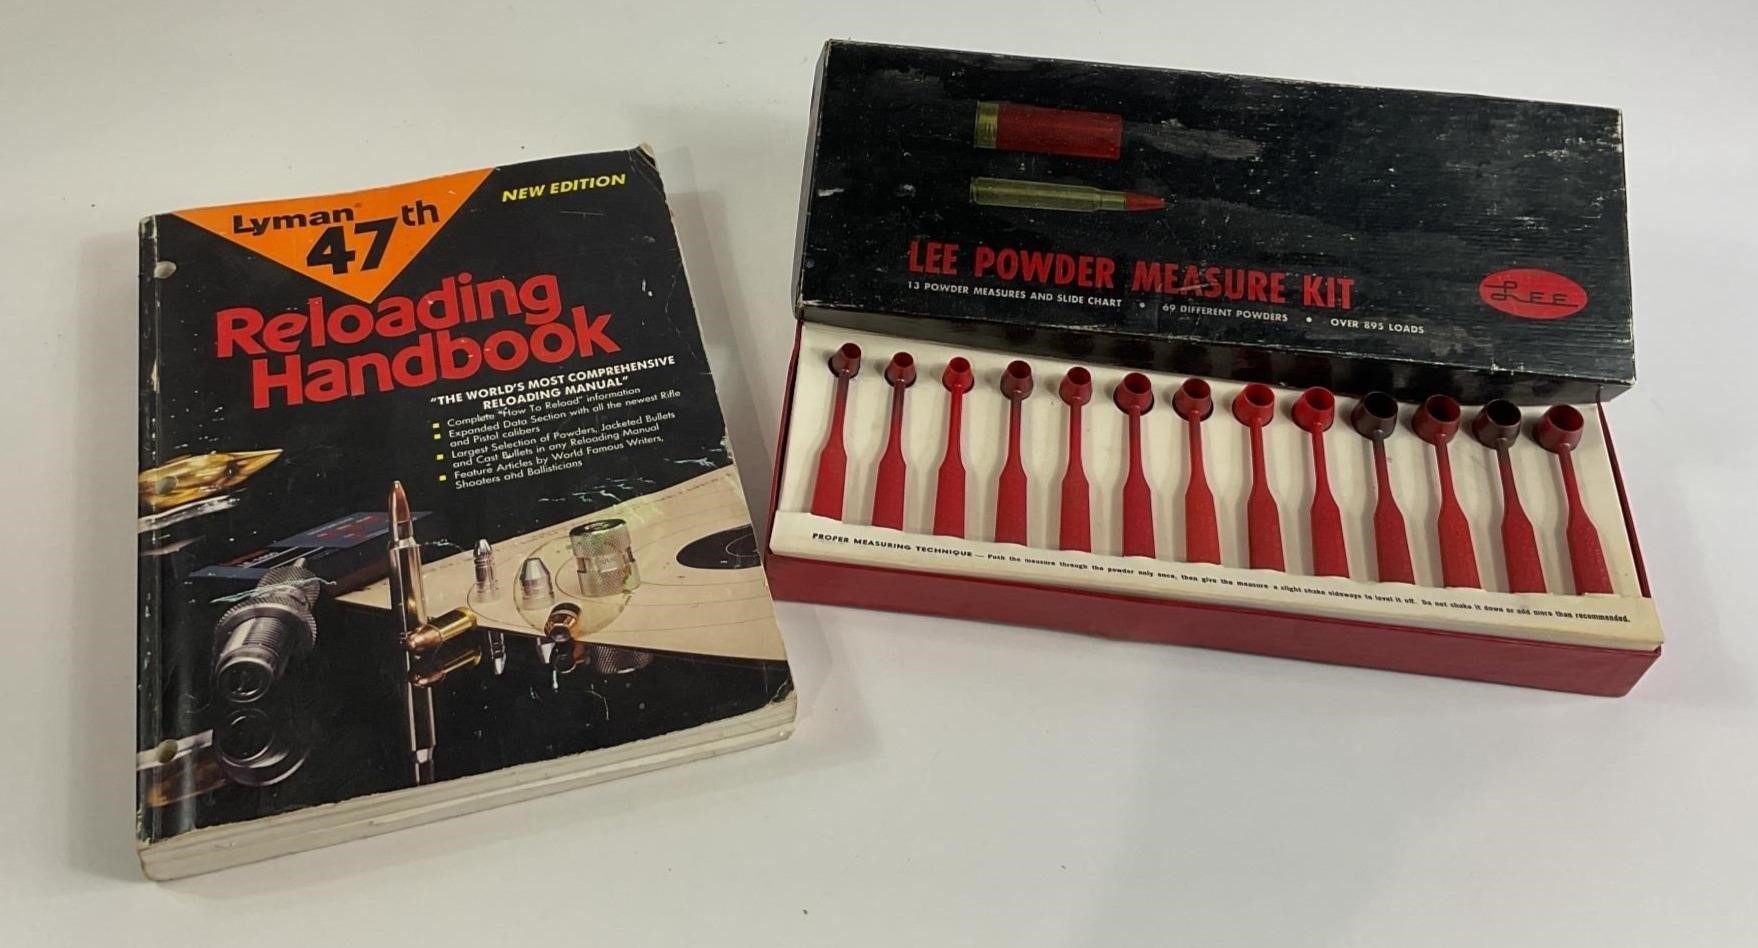 Reloading Handbook & Lee Powder Measure Kit